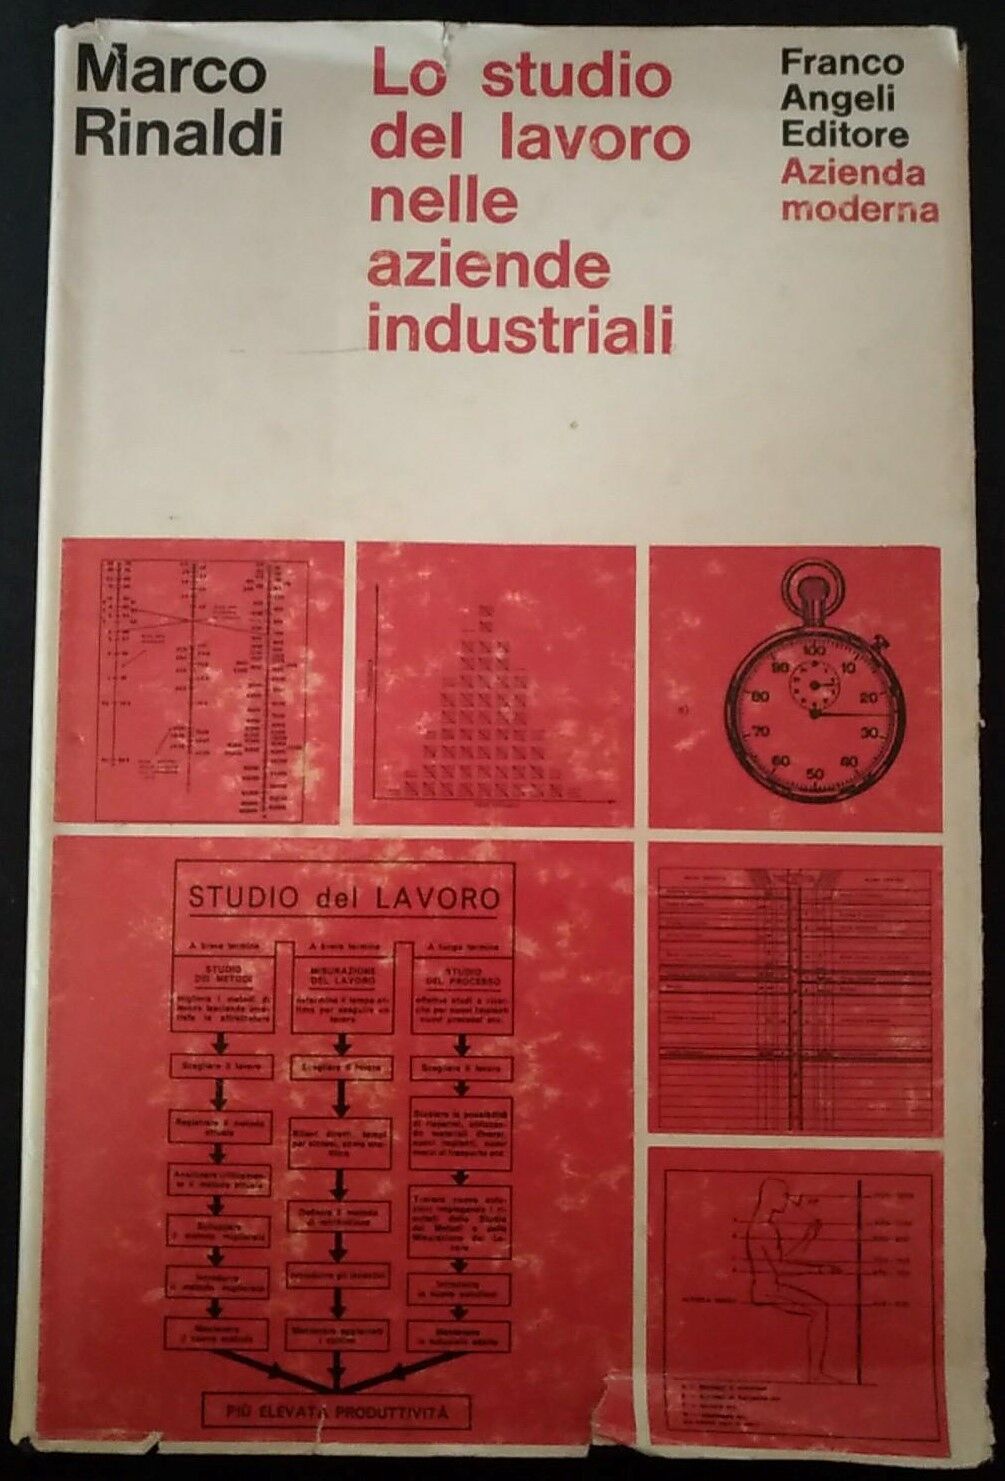  Lo studio del lavoro nelle aziende industriali - Marco Rinaldi,1971, Angeli - S